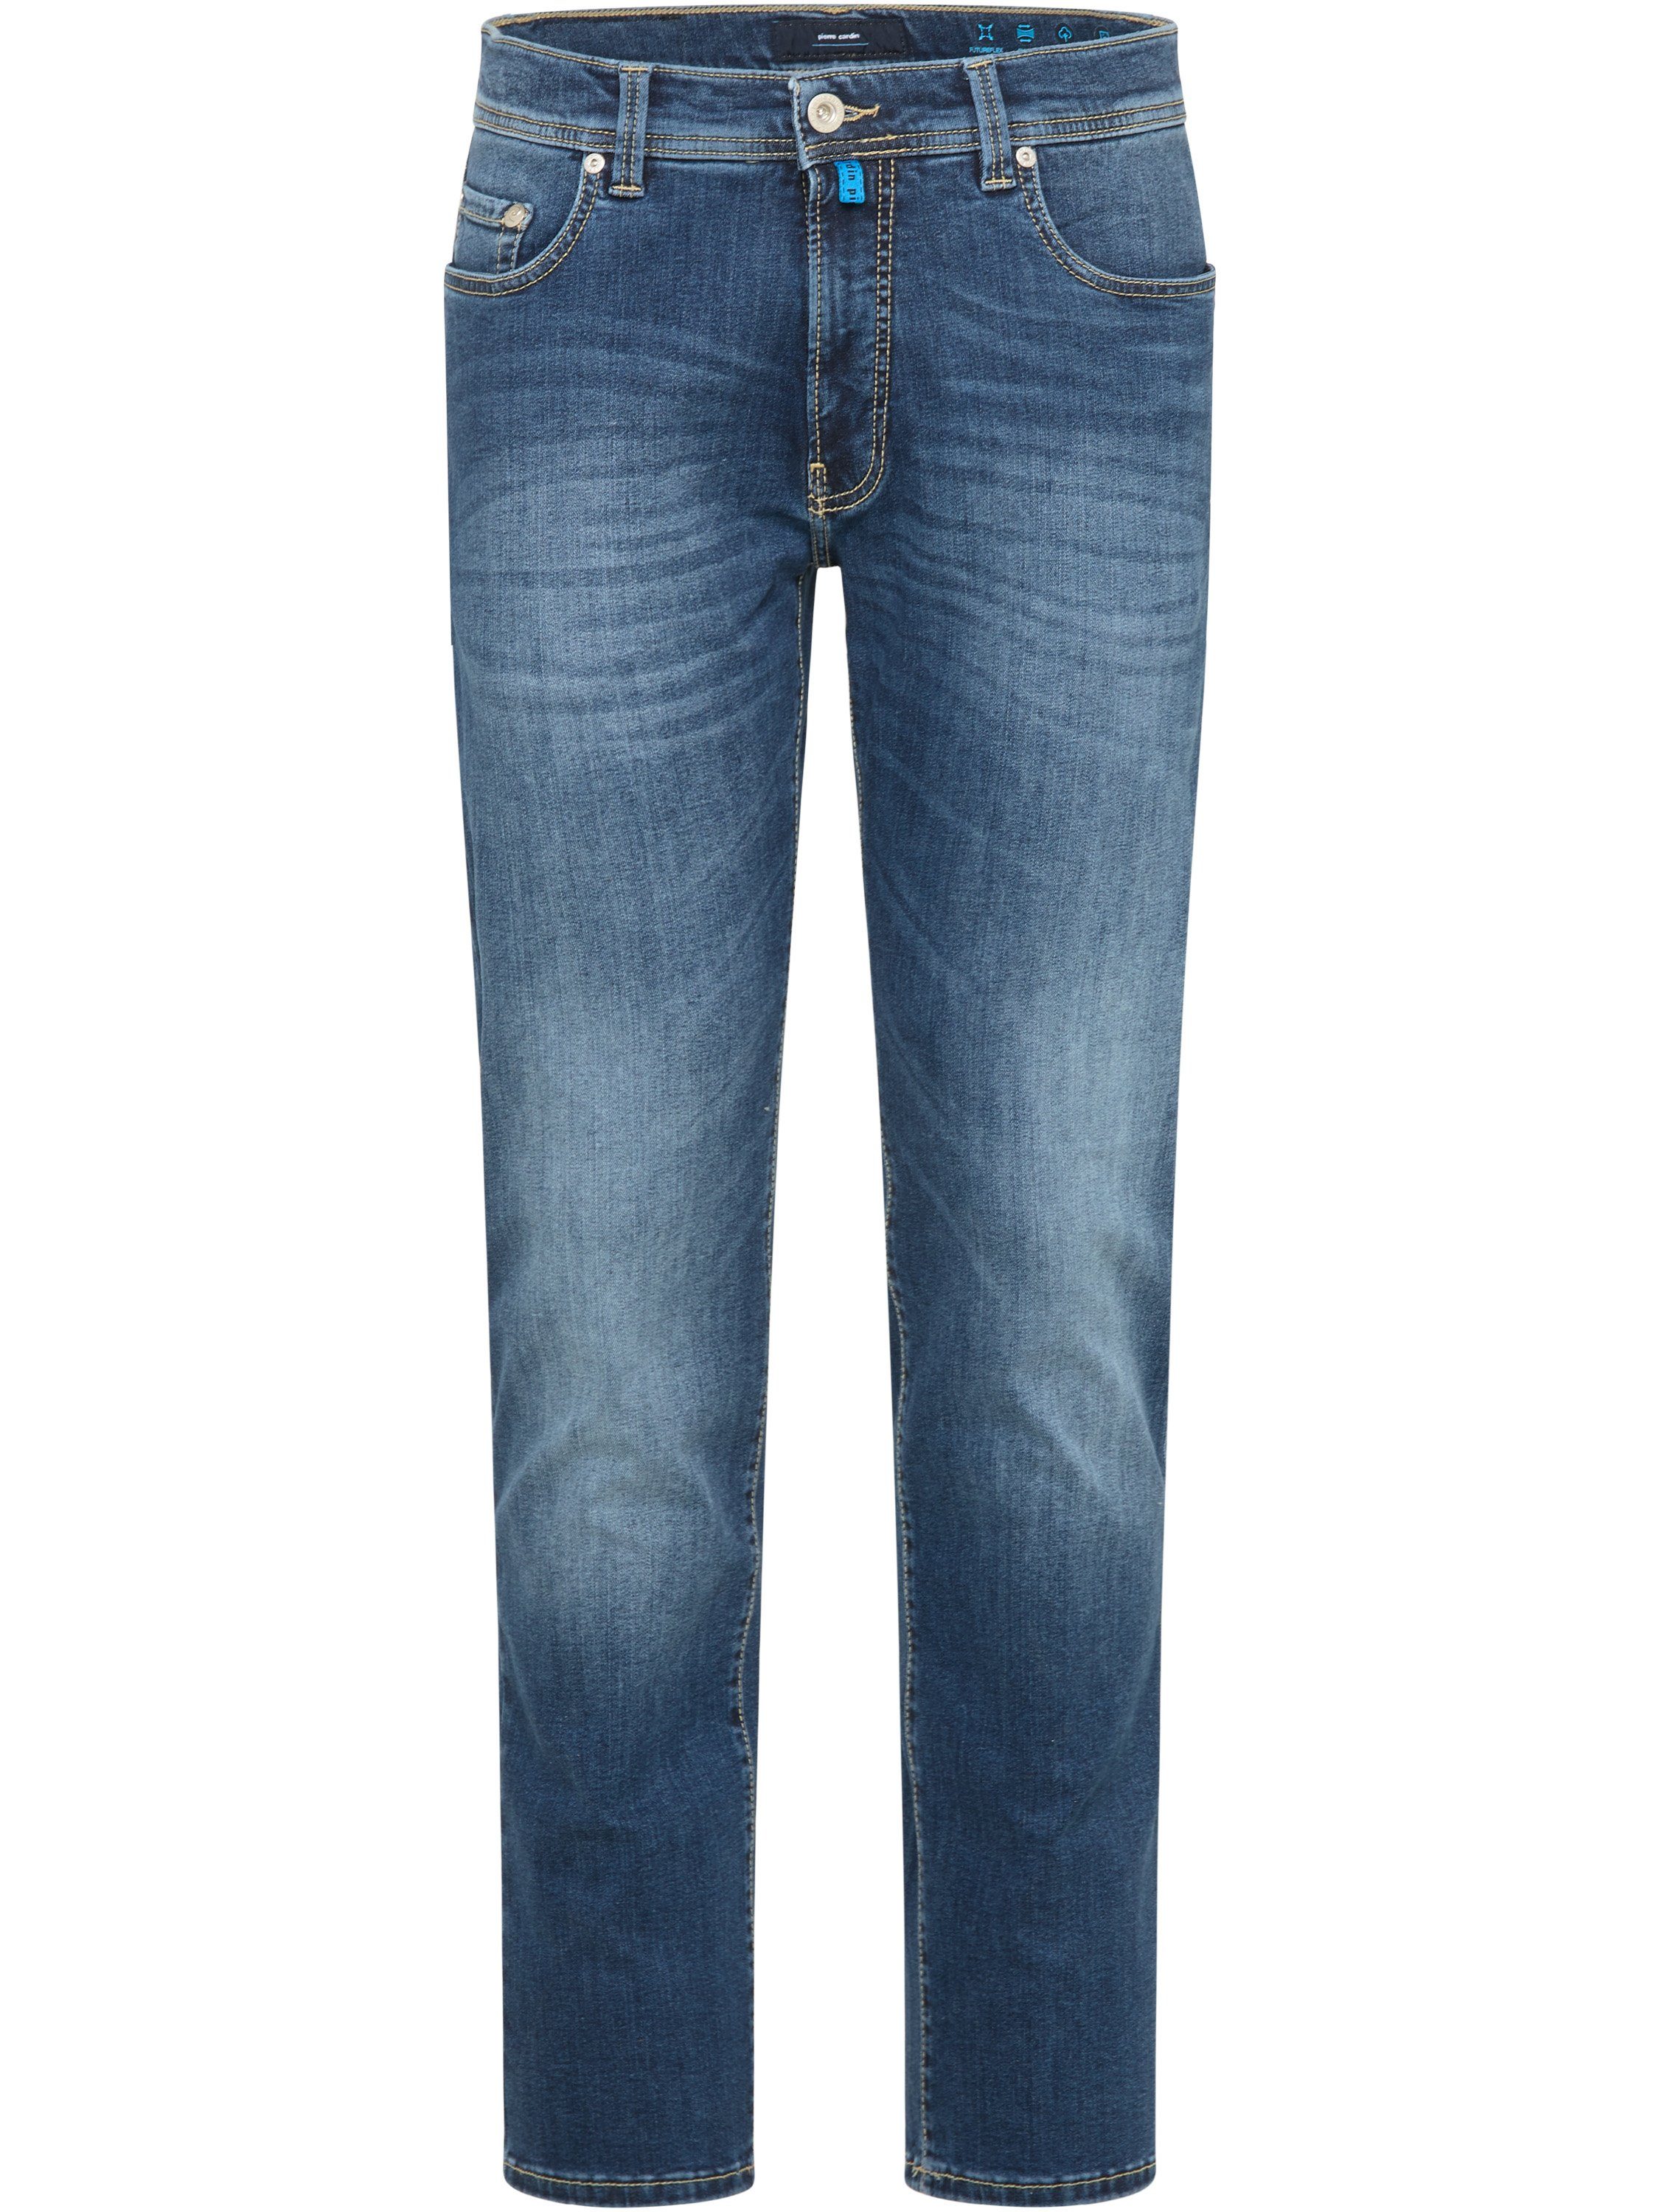 Pierre Cardin 5-Pocket-Jeans PIERRE CARDIN FUTUREFLEX LYON vintage used denim 3451 8820.02